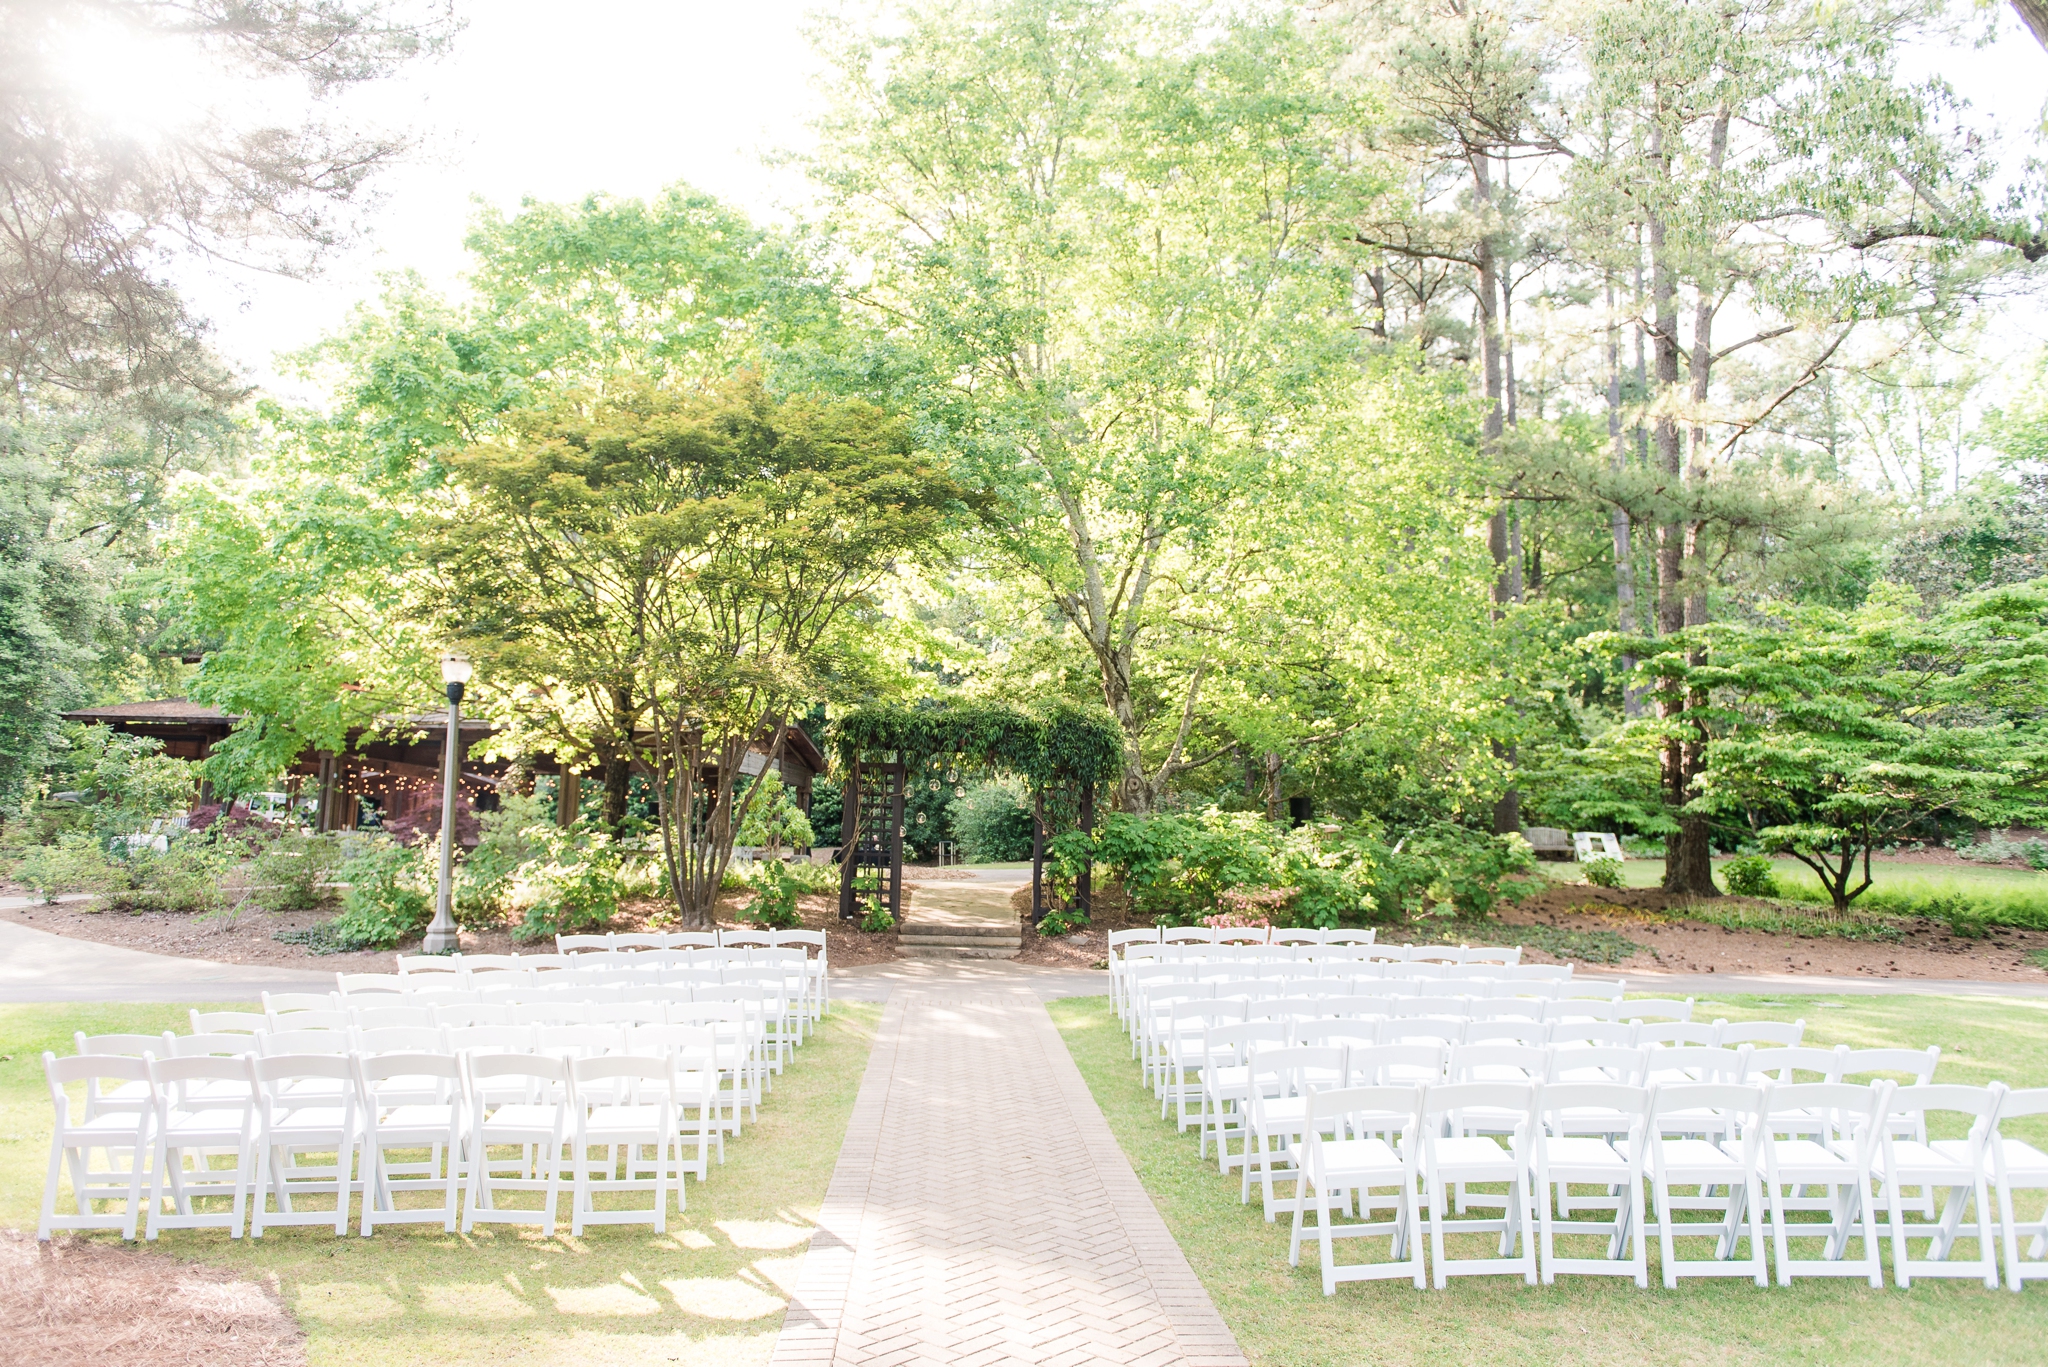 Aldridge Garden Hoover Alabama Blush Spring Wedding | Birmingham Alabama Wedding Photographers_0022.jpg